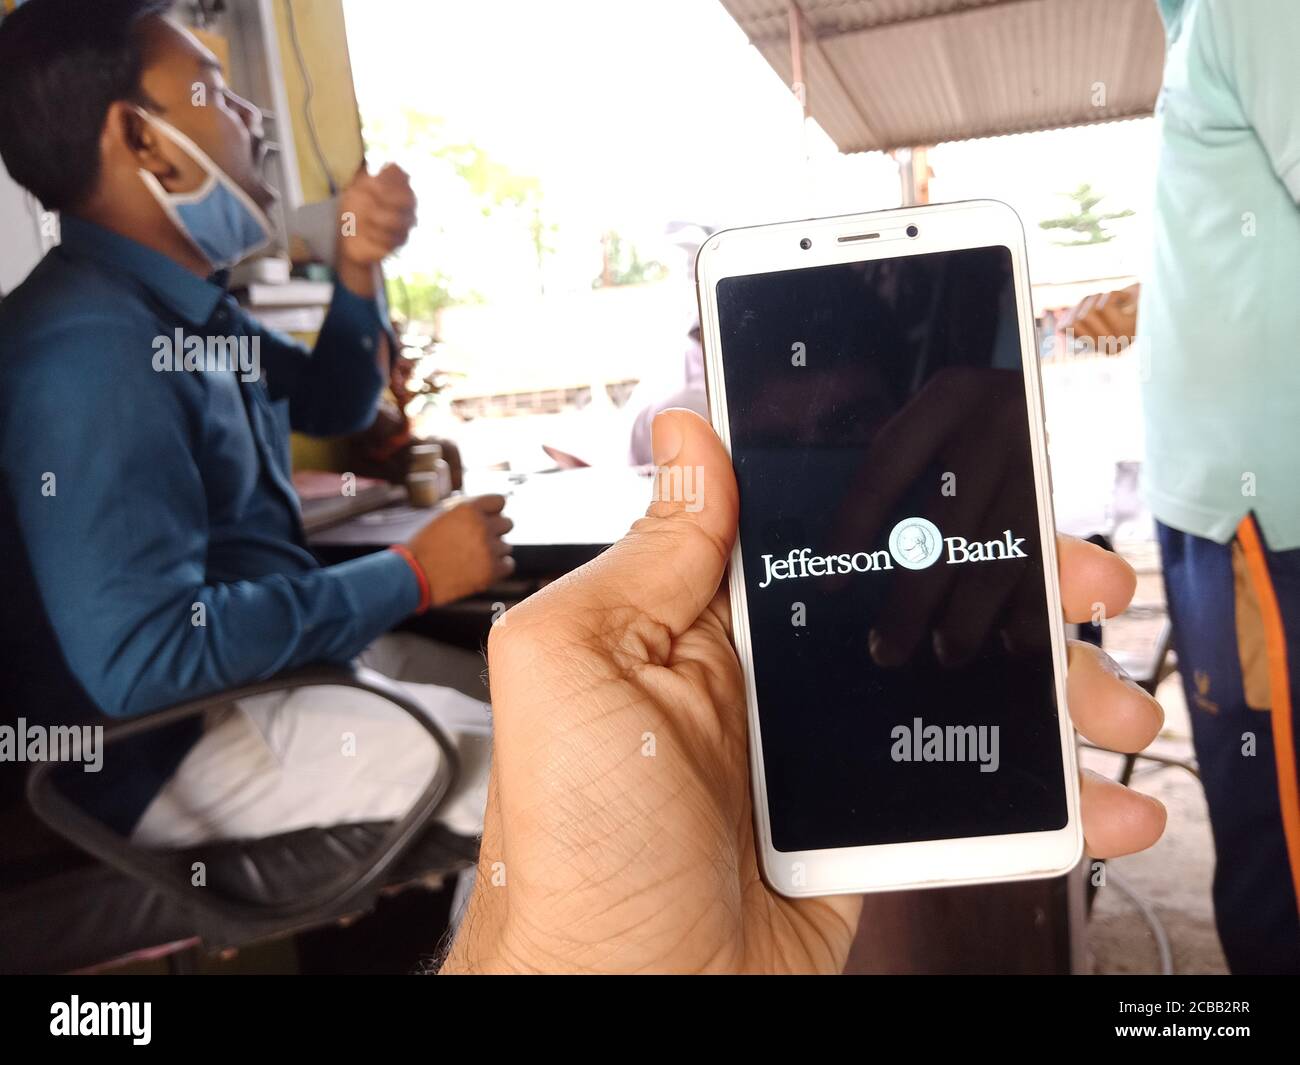 DISTRETTO KATNI, INDIA - 02 GIUGNO 2020: Un uomo indiano che detiene smartphone con visualizzazione del logo della banca jefferson sullo schermo, moderno russo bancario educati Foto Stock